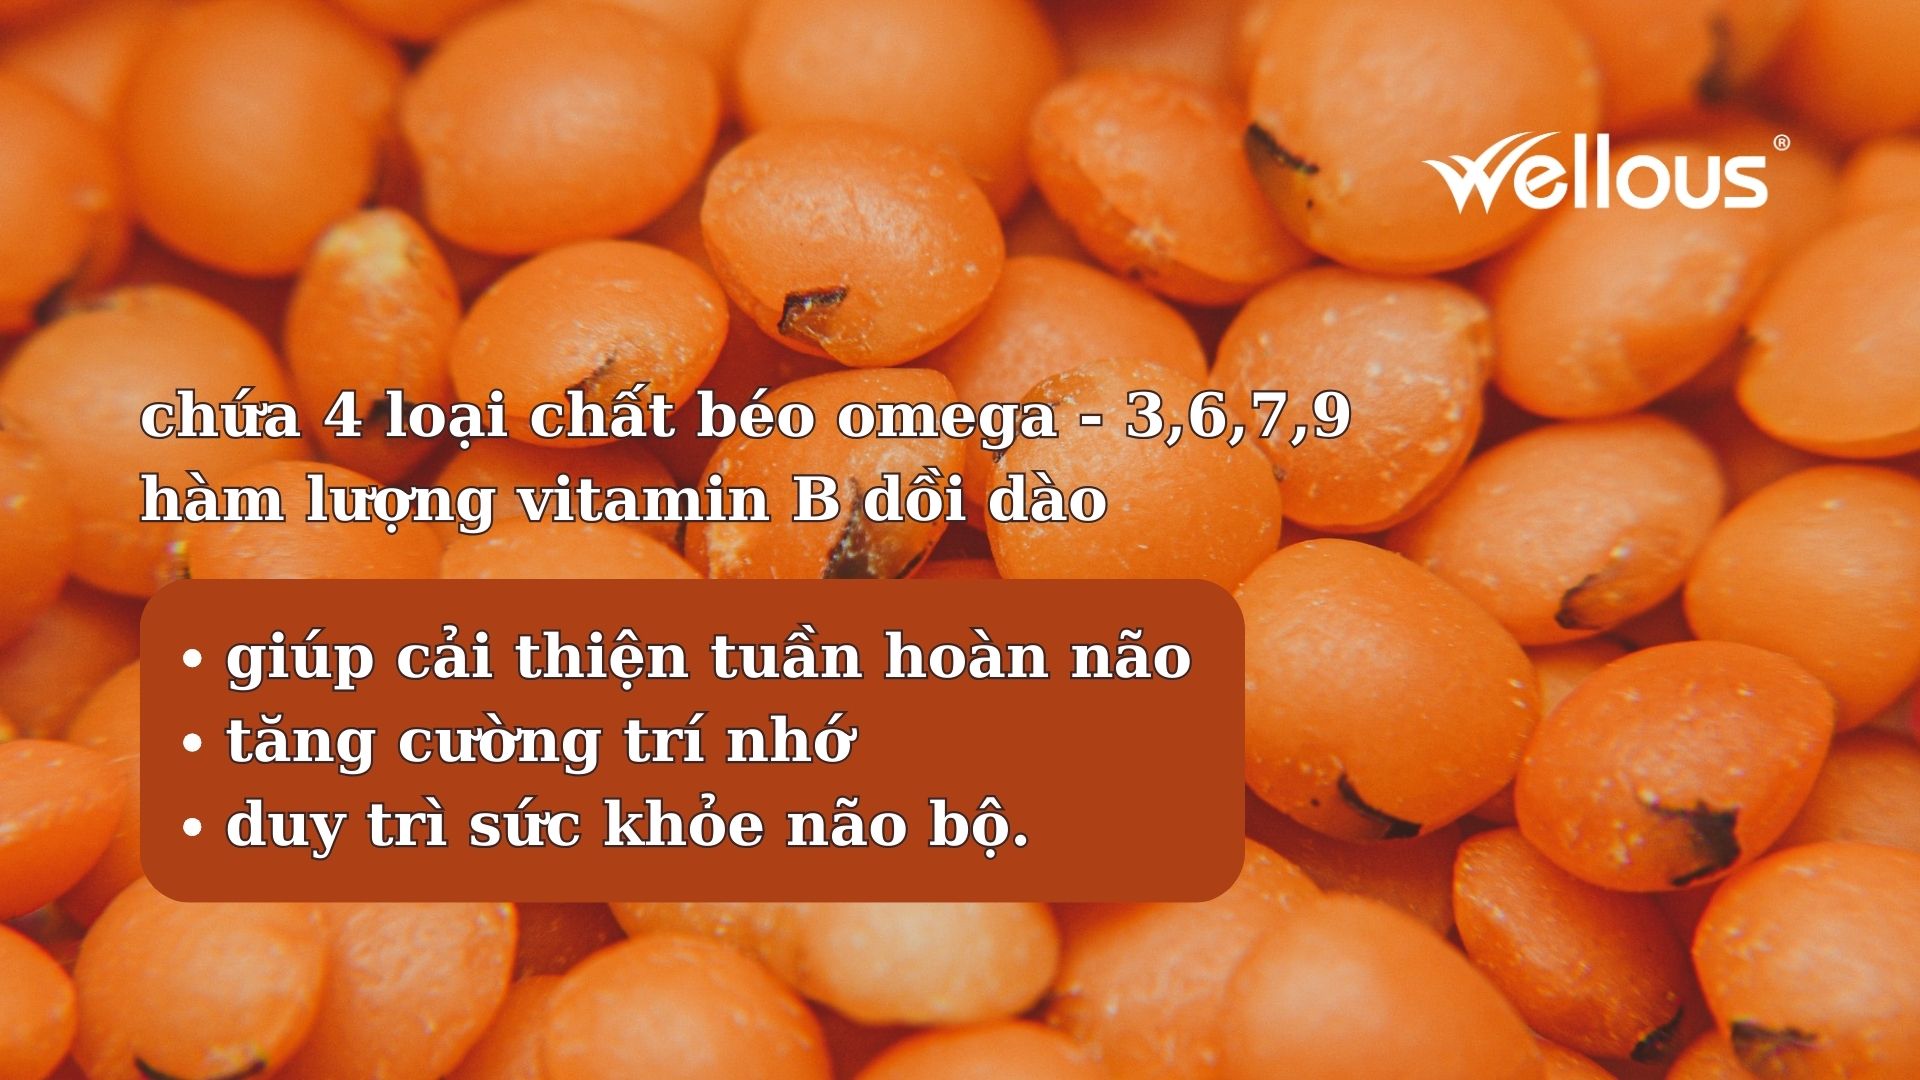 Hắc mai biển là trái cây duy nhất trên thế giới có chứa 4 loại chất béo omega - 3,6,7,9 cùng hàm lượng vitamin B dồi dào